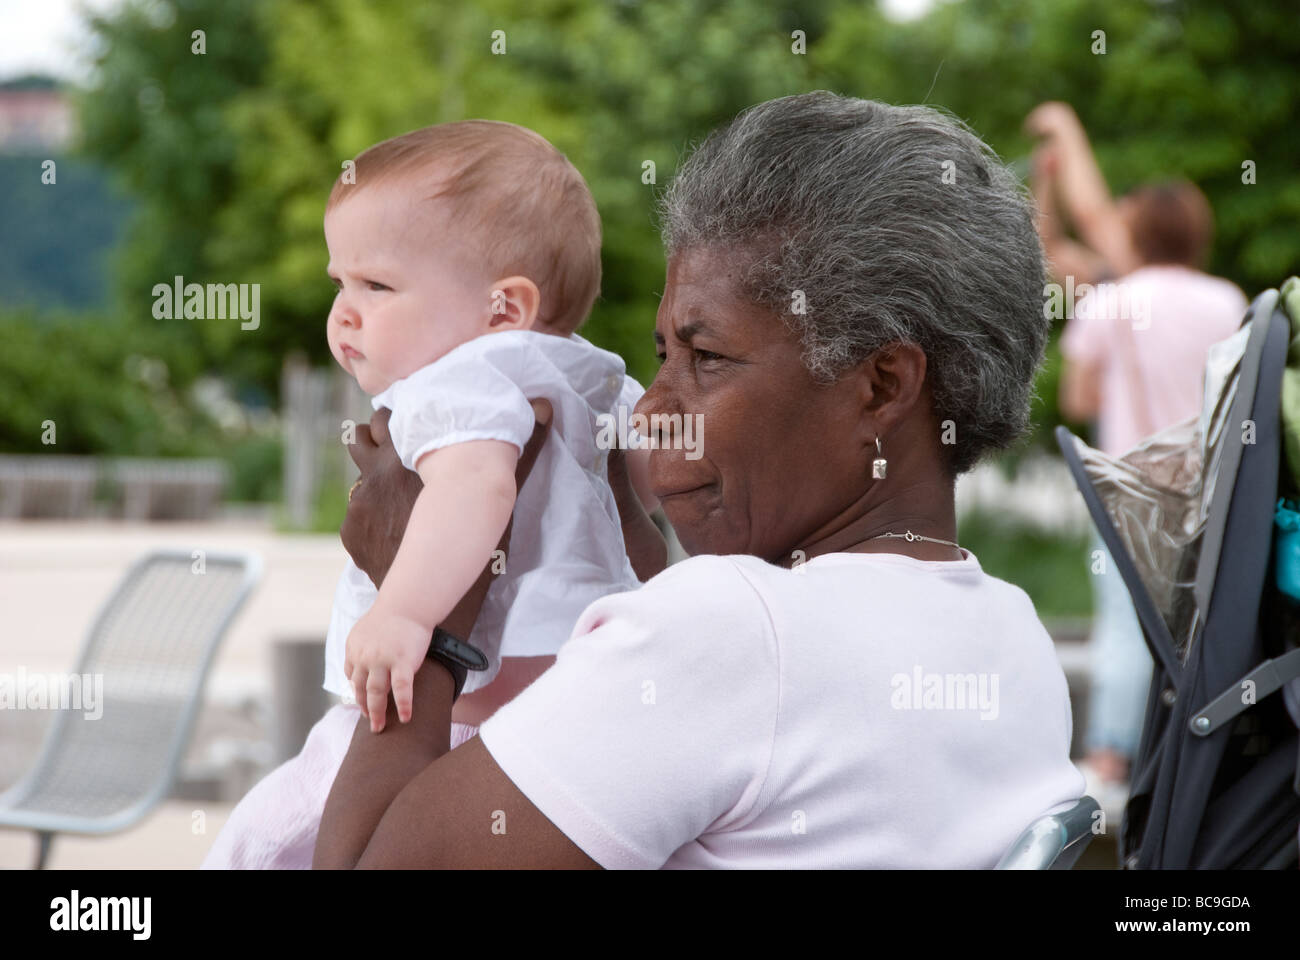 Schwarzes Kindermädchen Nanny halten weiße Baby Kleinkind in einem New York City park Stockfoto